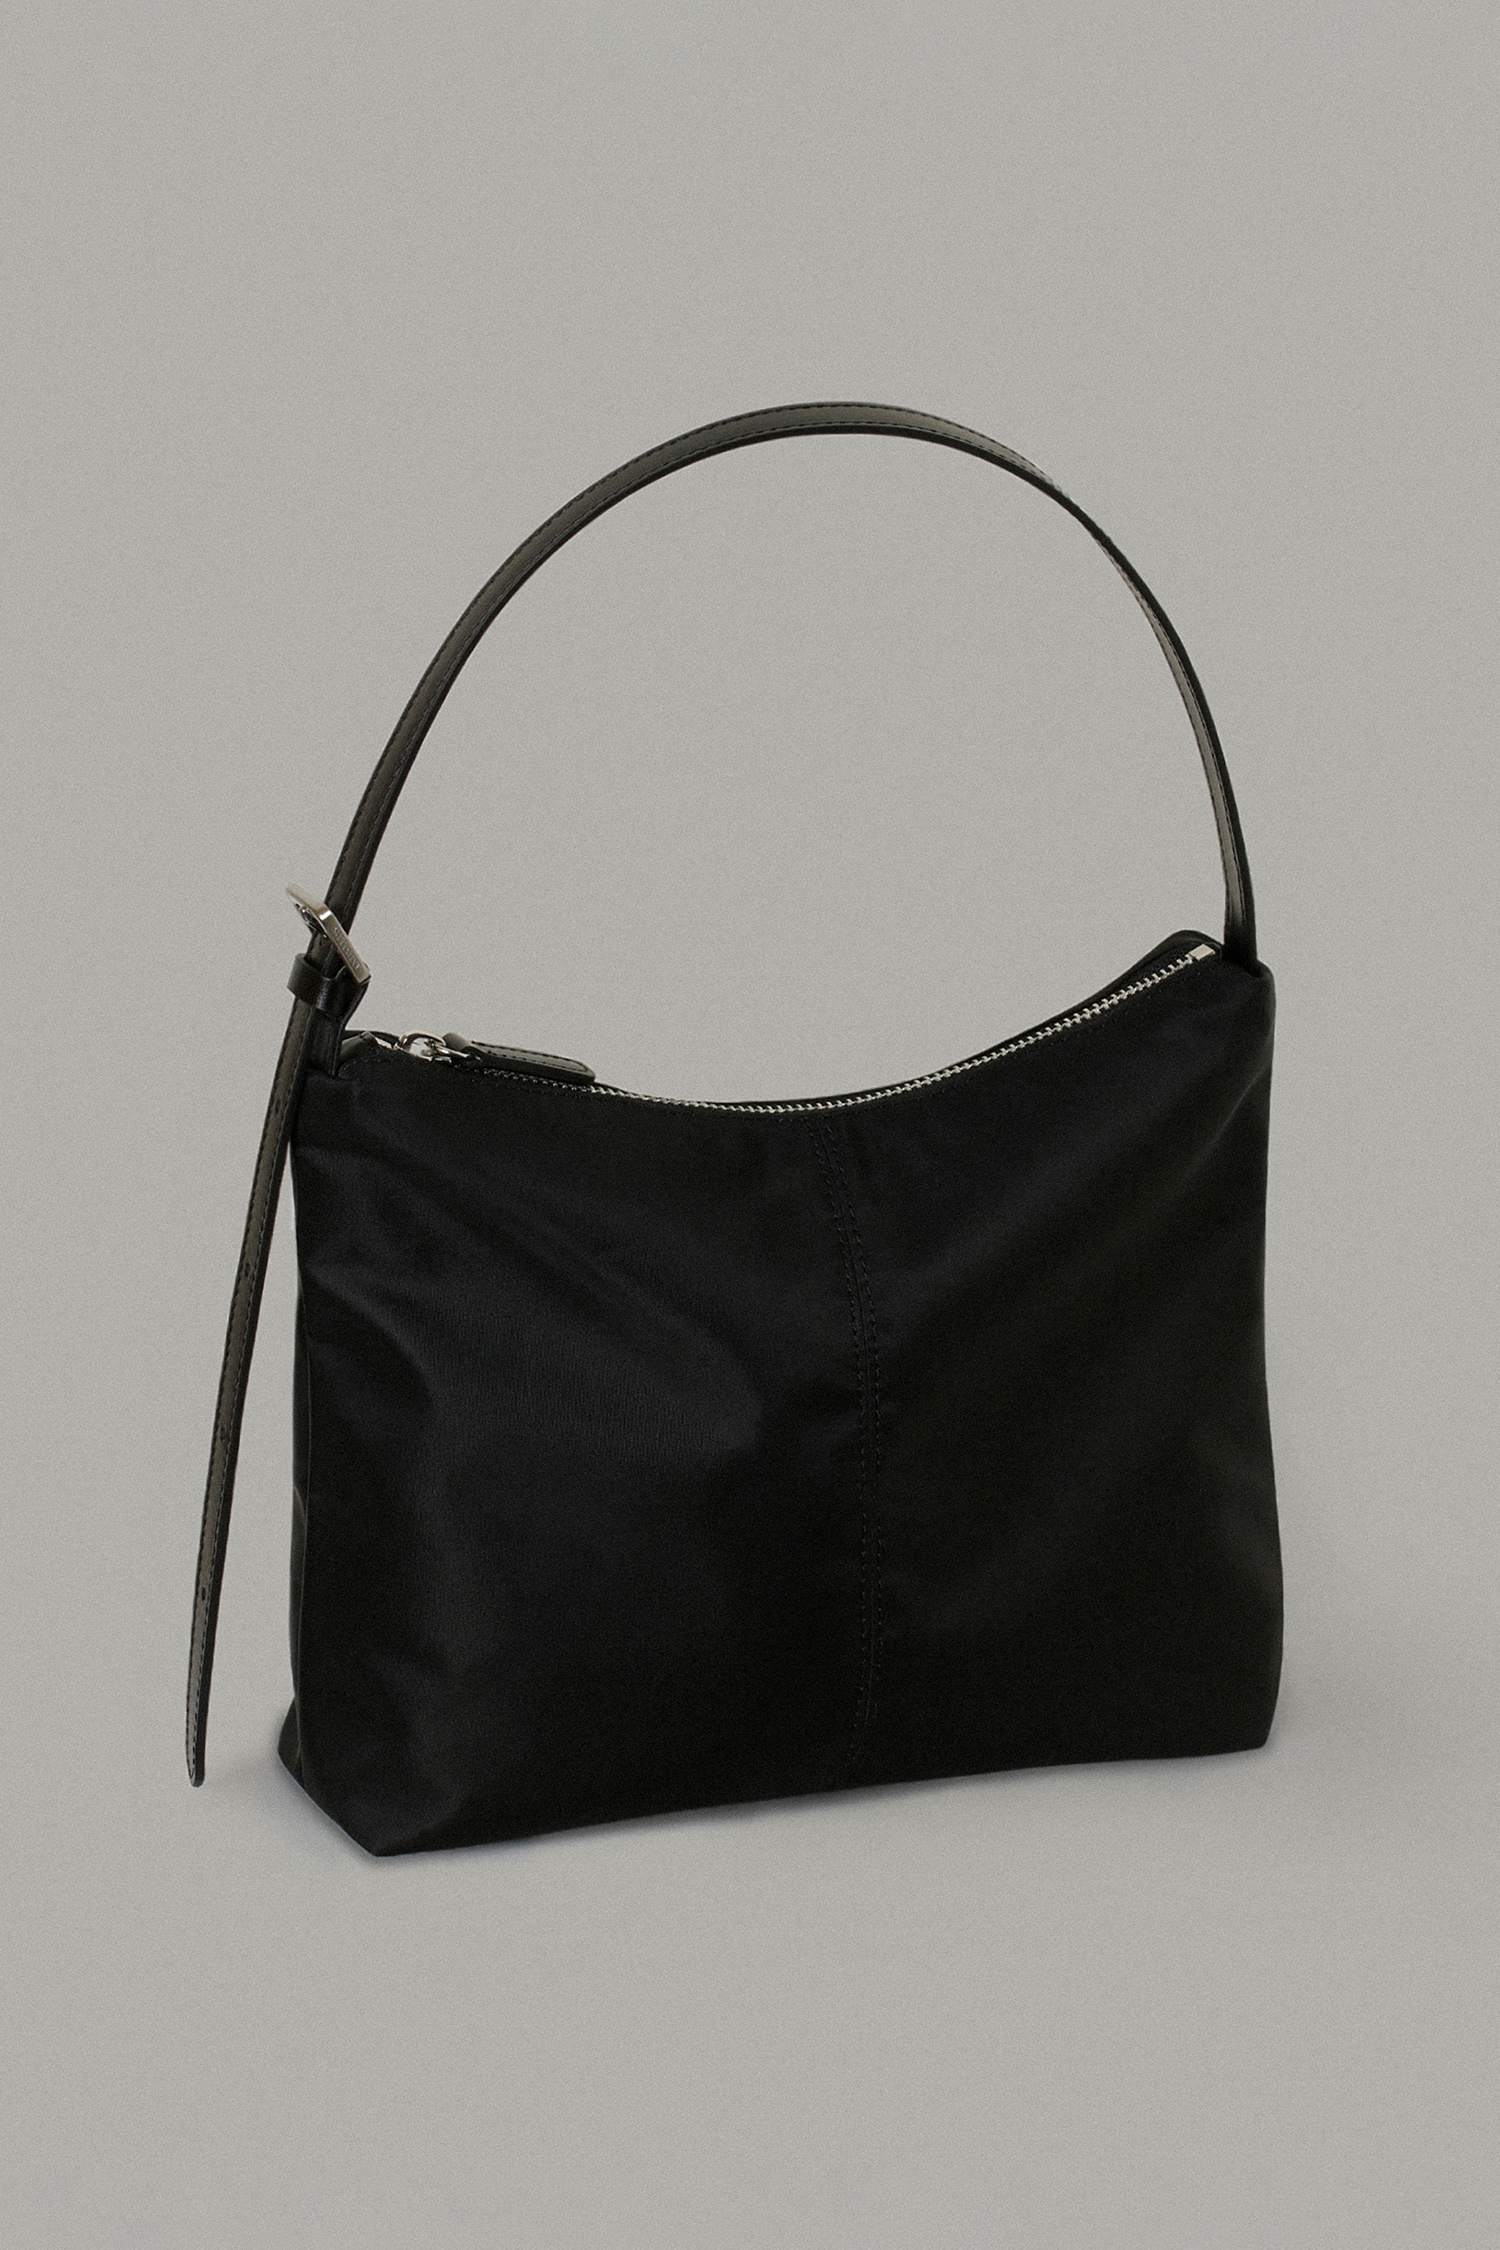 Nylon shoulder bag (black)